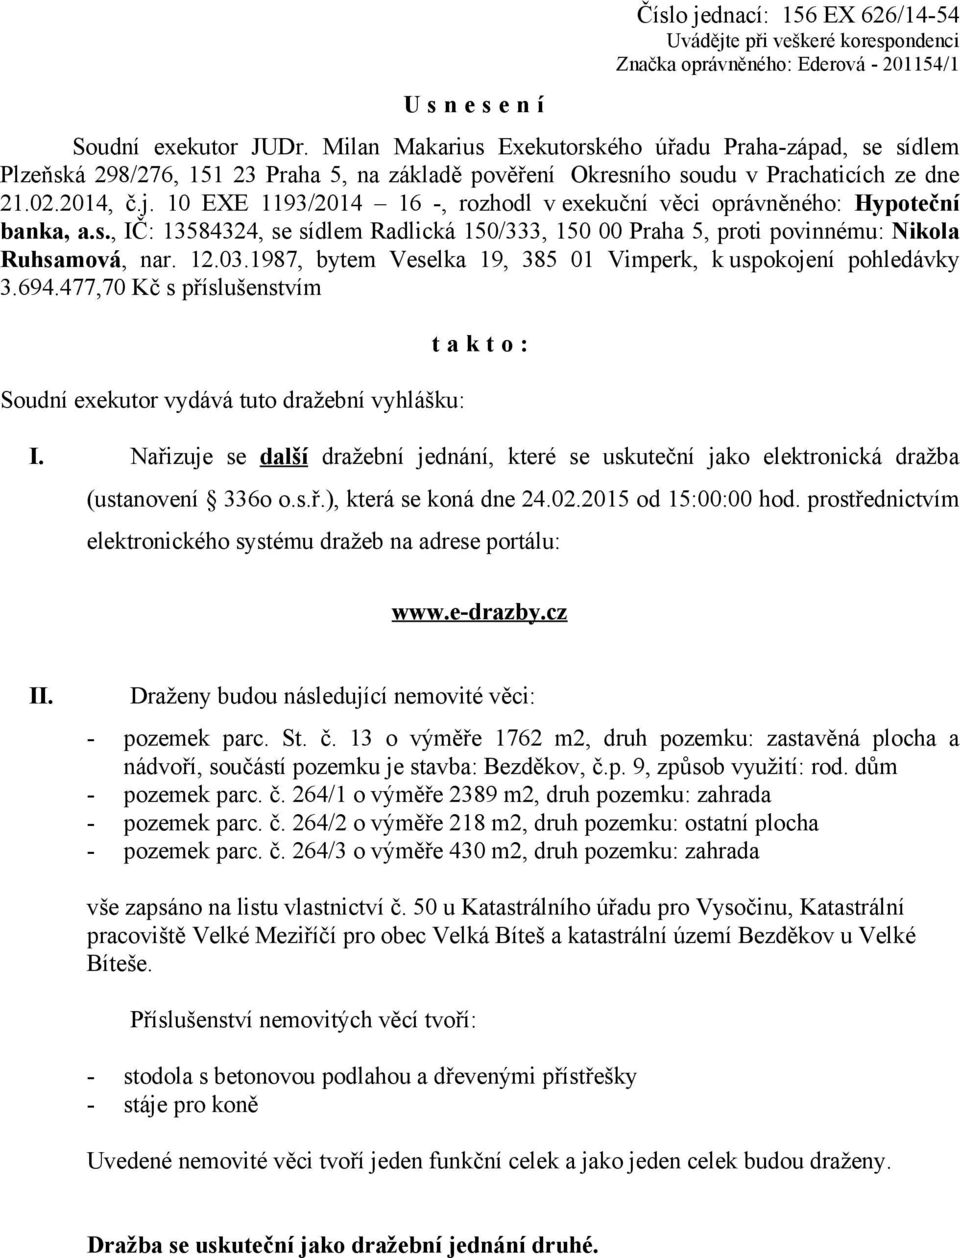 10 EXE 1193/2014 16 -, rozhodl v exekuční věci oprávněného: Hypoteční banka, a.s., IČ: 13584324, se sídlem Radlická 150/333, 150 00 Praha 5, proti povinnému: Nikola Ruhsamová, nar. 12.03.